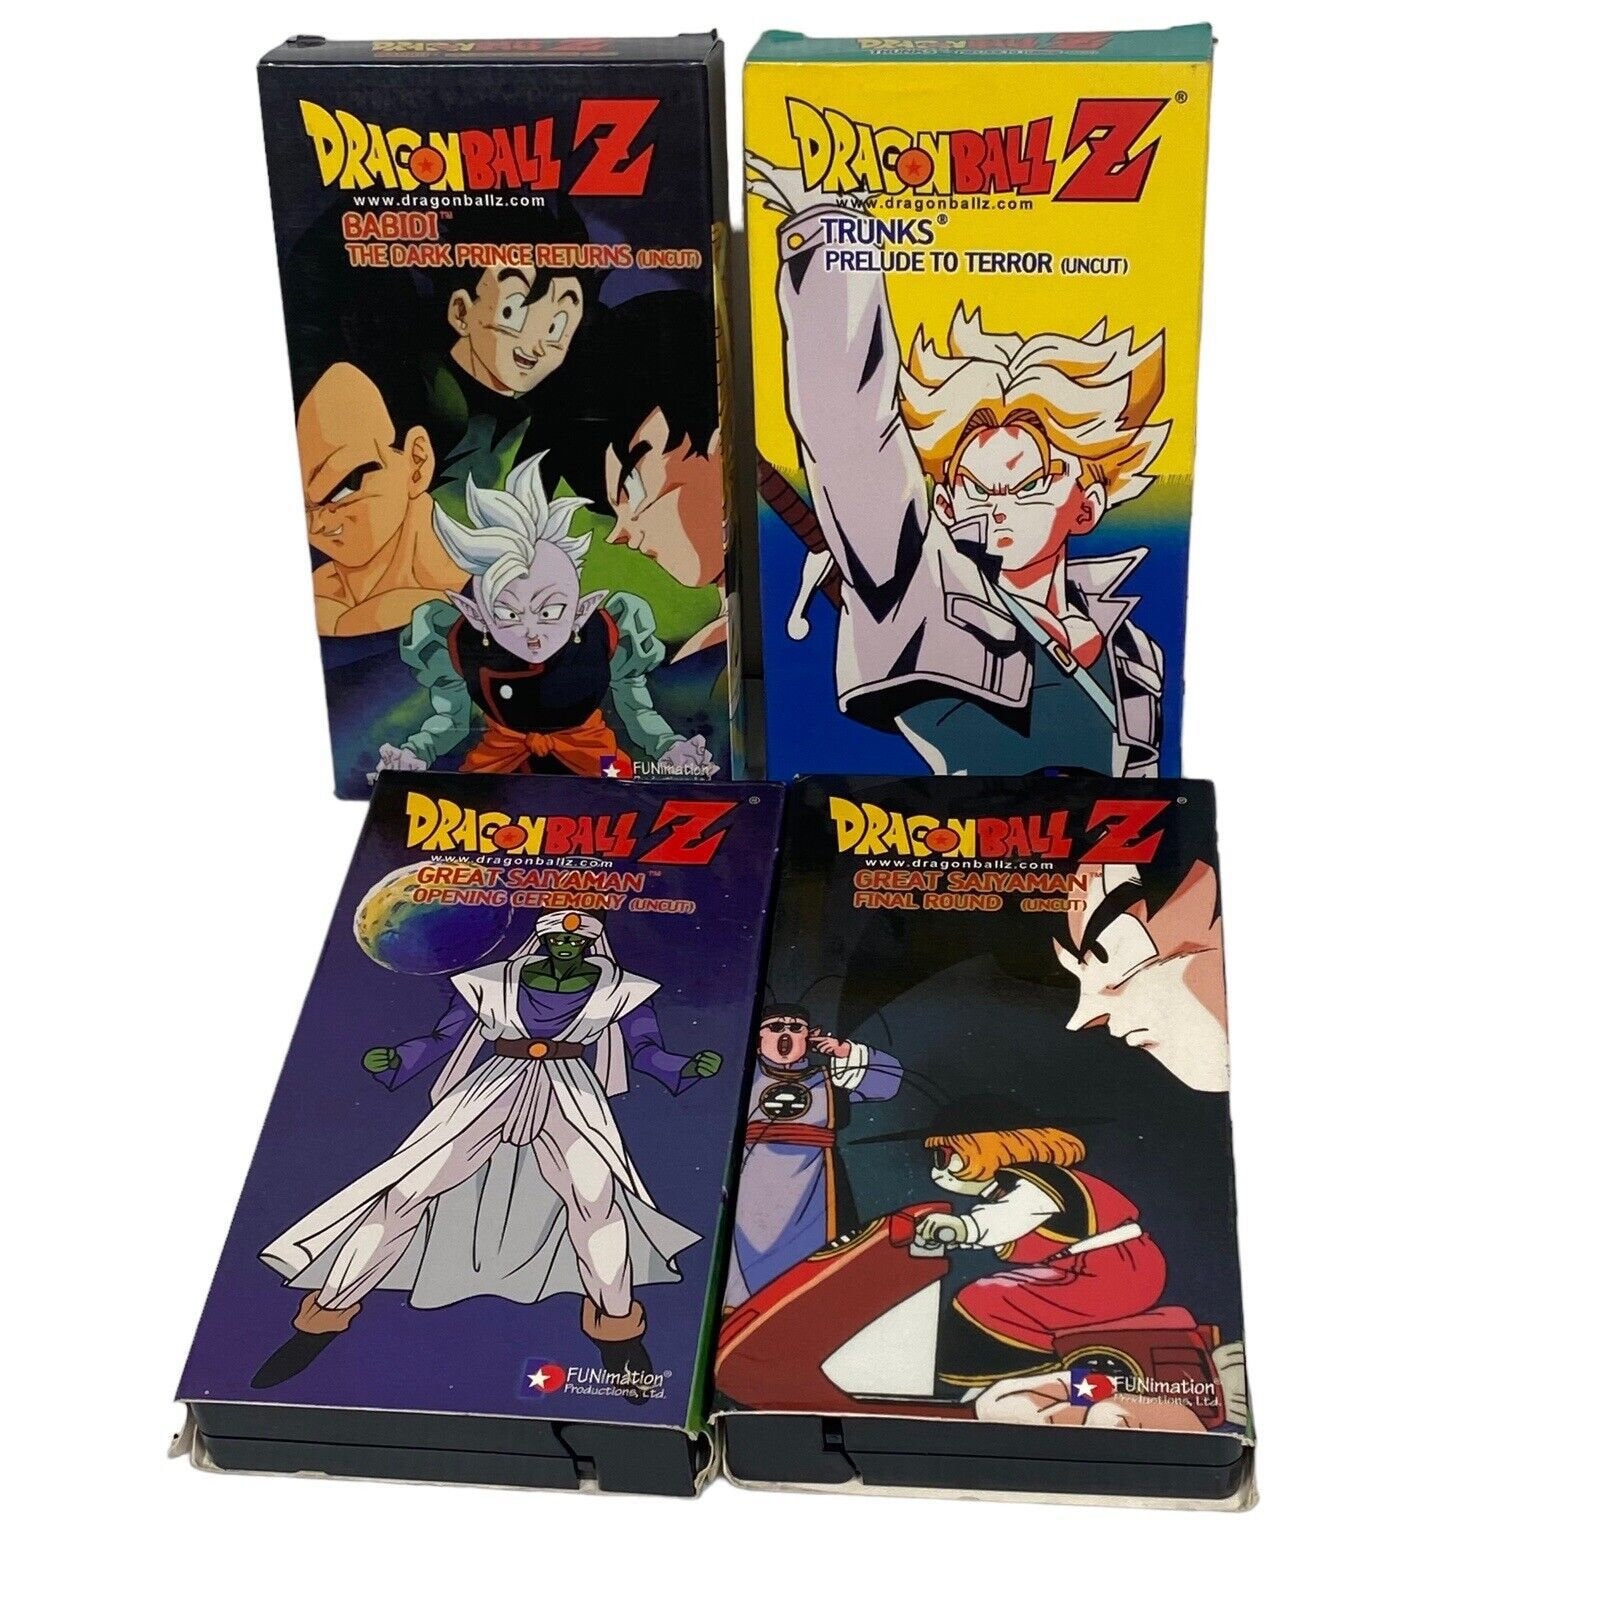 Filmes Dragon Ball GT Completo Pack e VHS em segunda mão durante 1